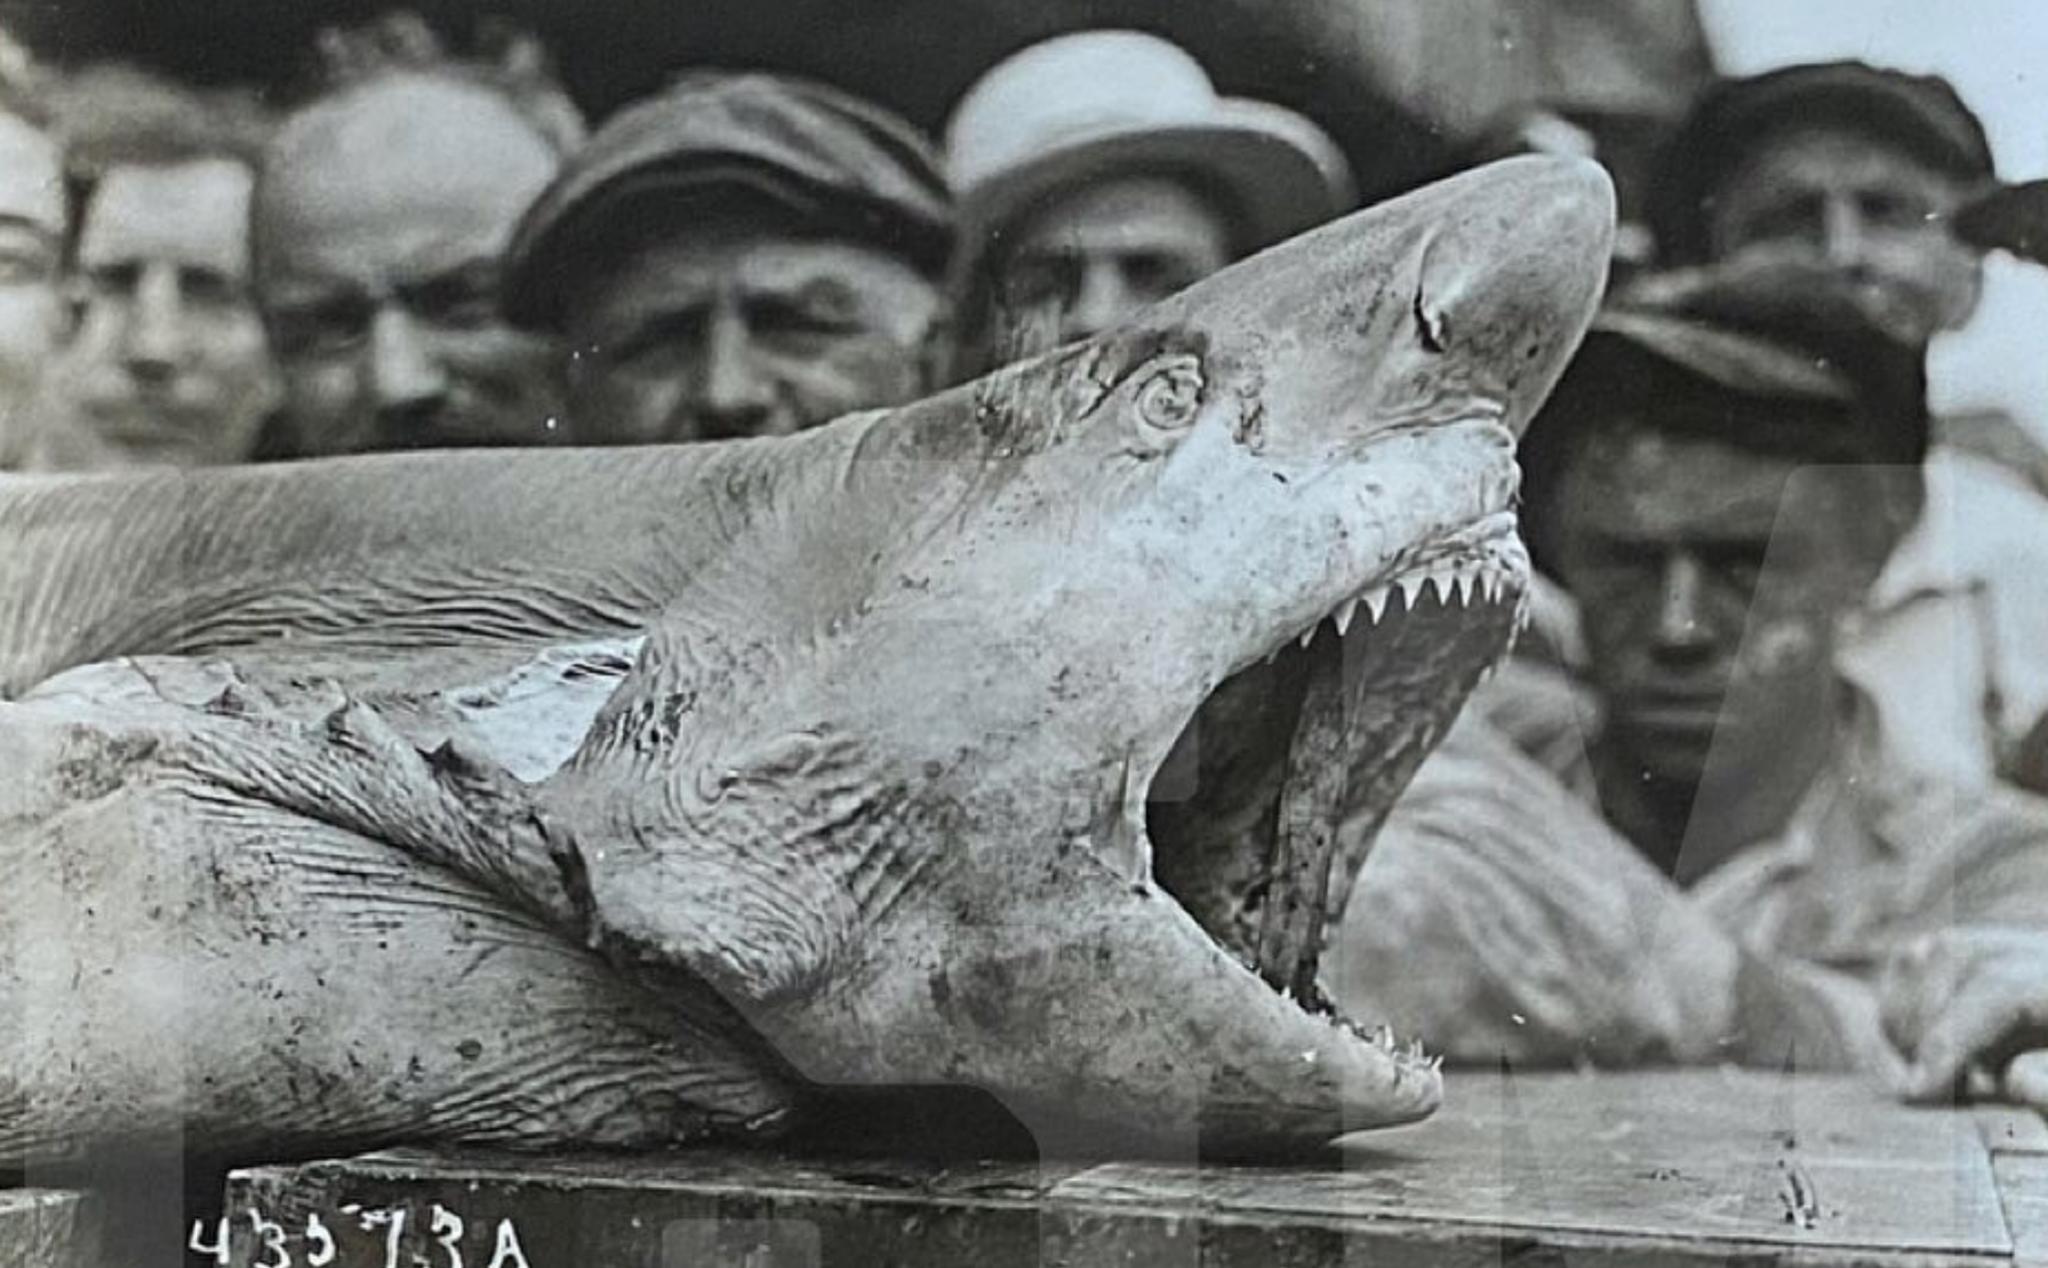 "12 ngày kinh hoàng" - cá mập ăn thịt người tại New Jersey và nguồn cảm hứng cho bộ phim Jaws